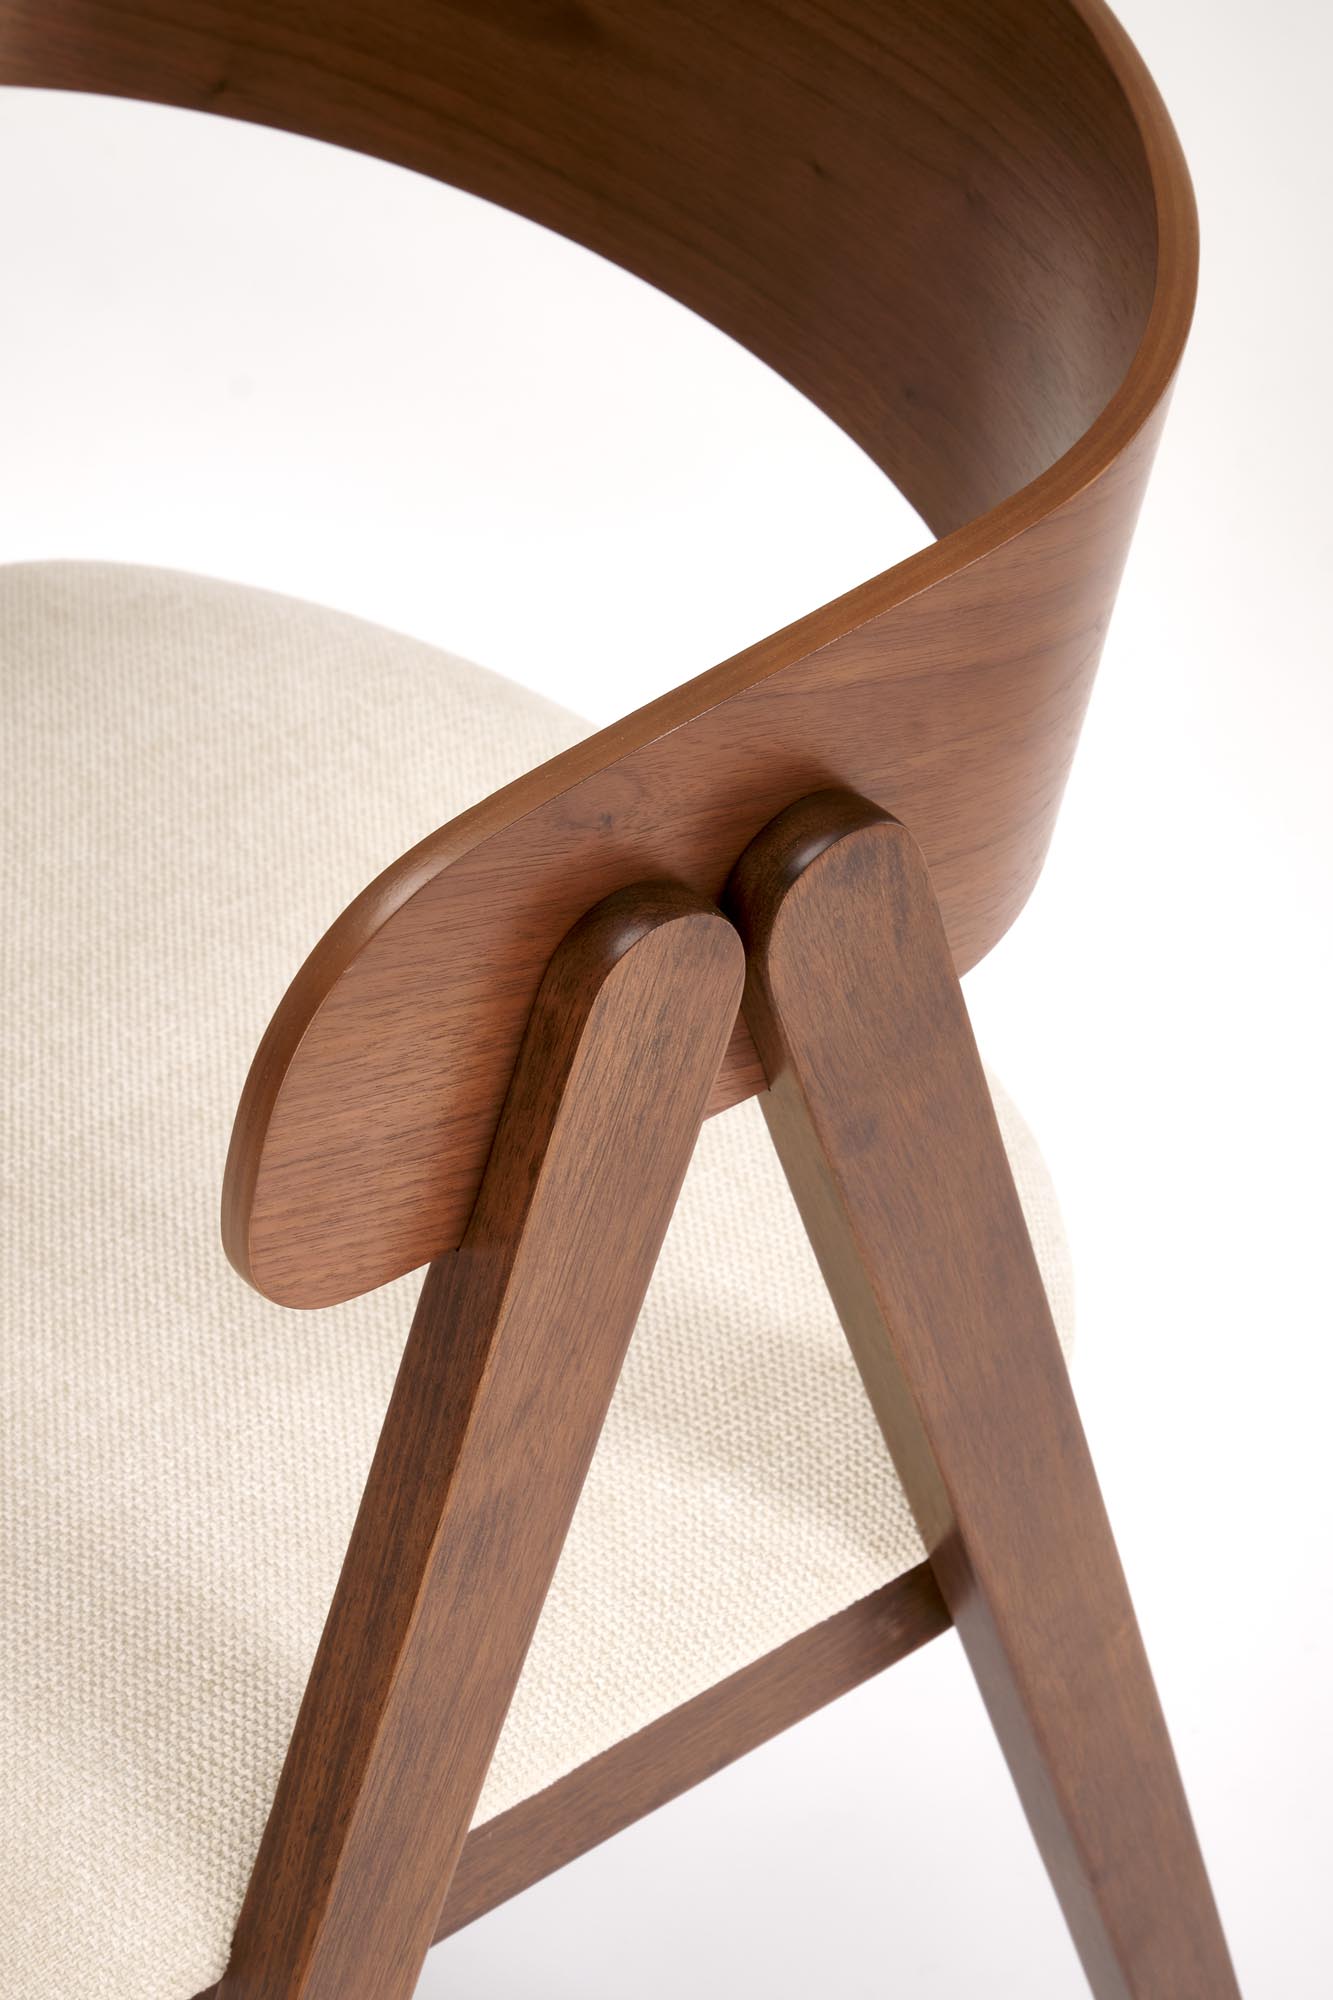 Krzesło drewniane K562 - orzech / jasny beżowy Krzesło drewniane K562 - orzech / jasny beżowy